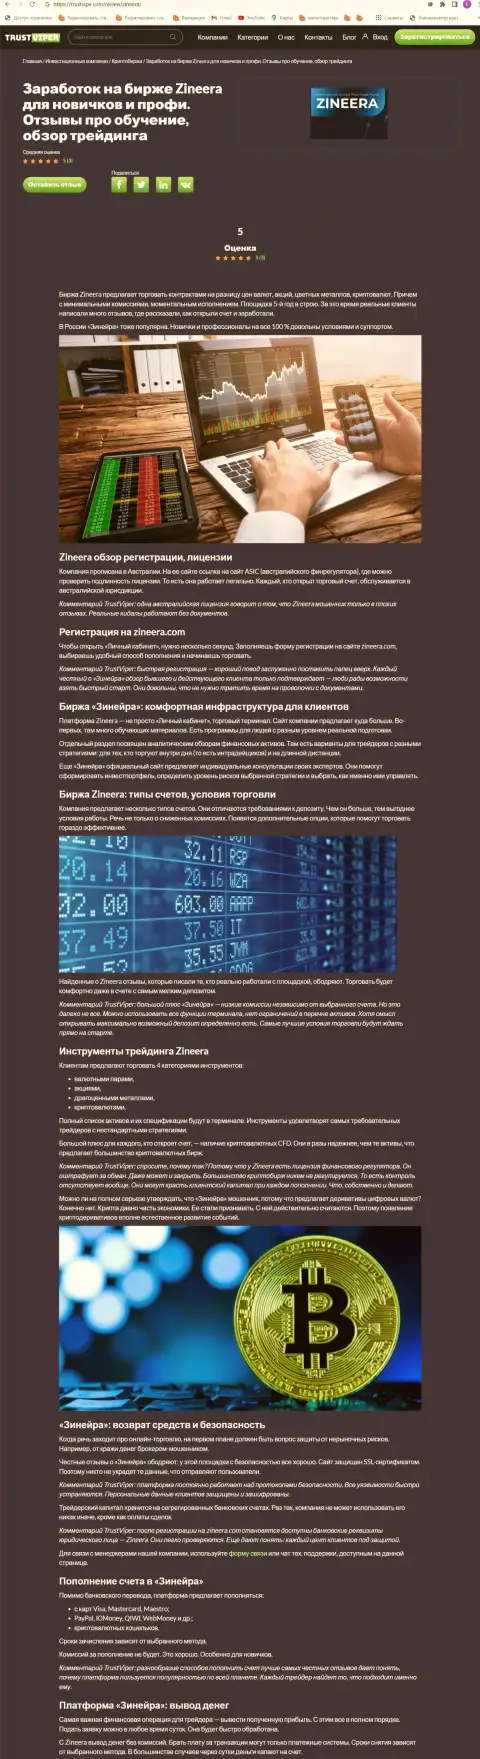 Обзор условий криптовалютной брокерской организации Зинеера на информационном сервисе Траствайпер Ком